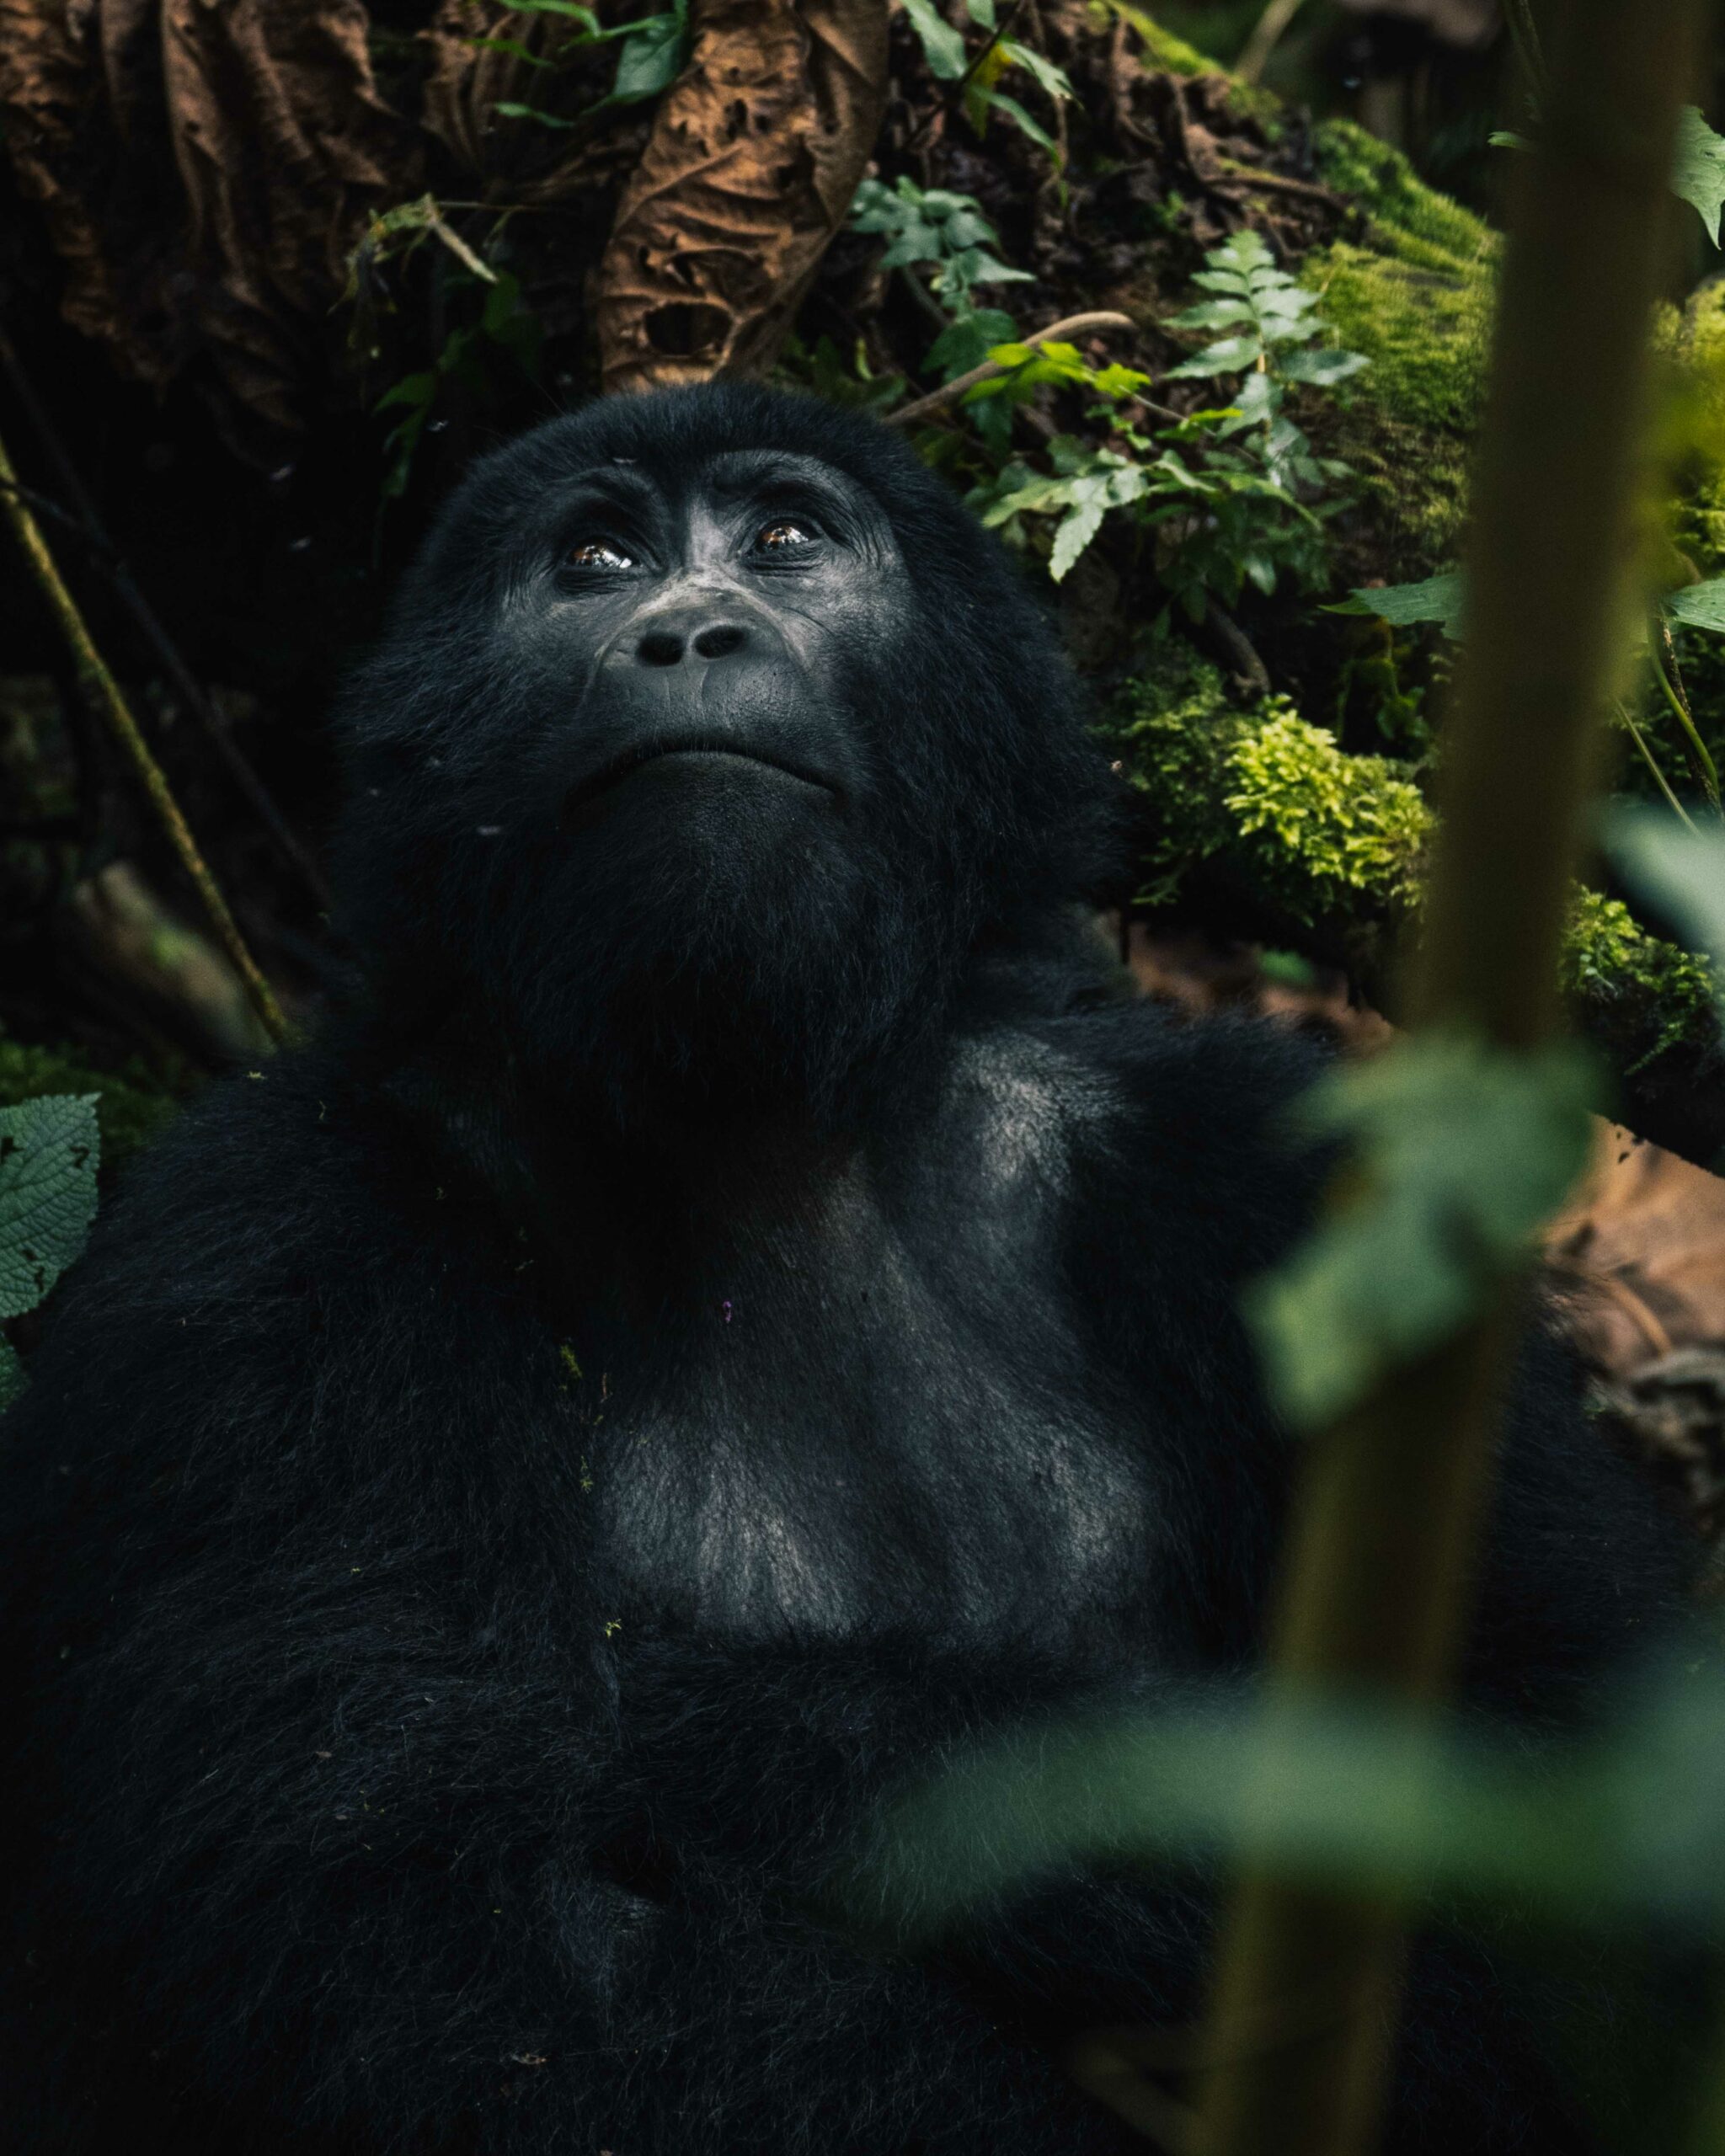 3 day gorilla trekking Uganda